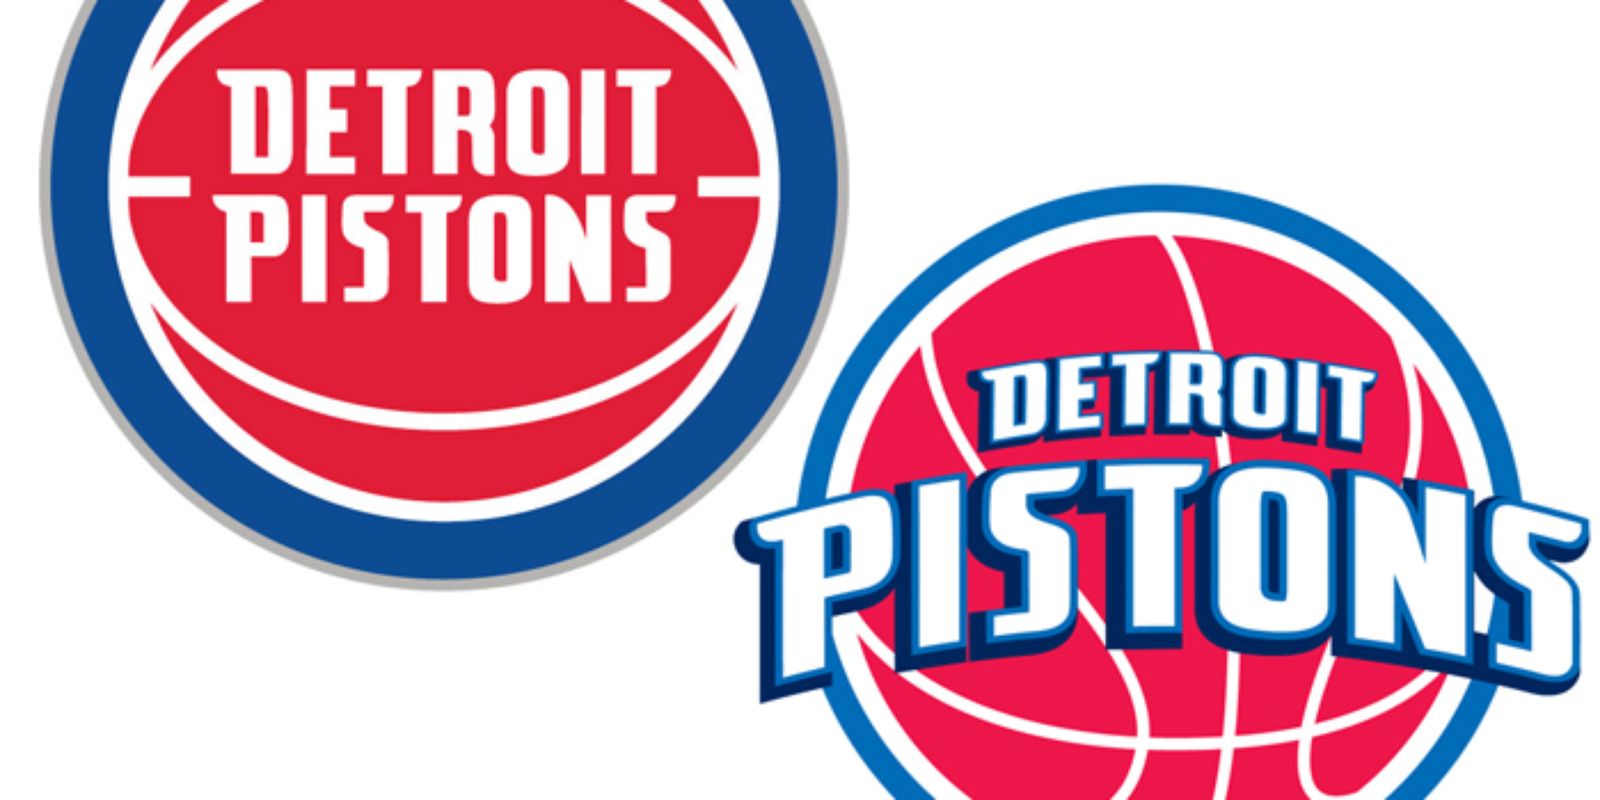 Detroit pistons. Детройт Пистонс. Detroit Pistons logo. Детройт Пистонс старый логотип.